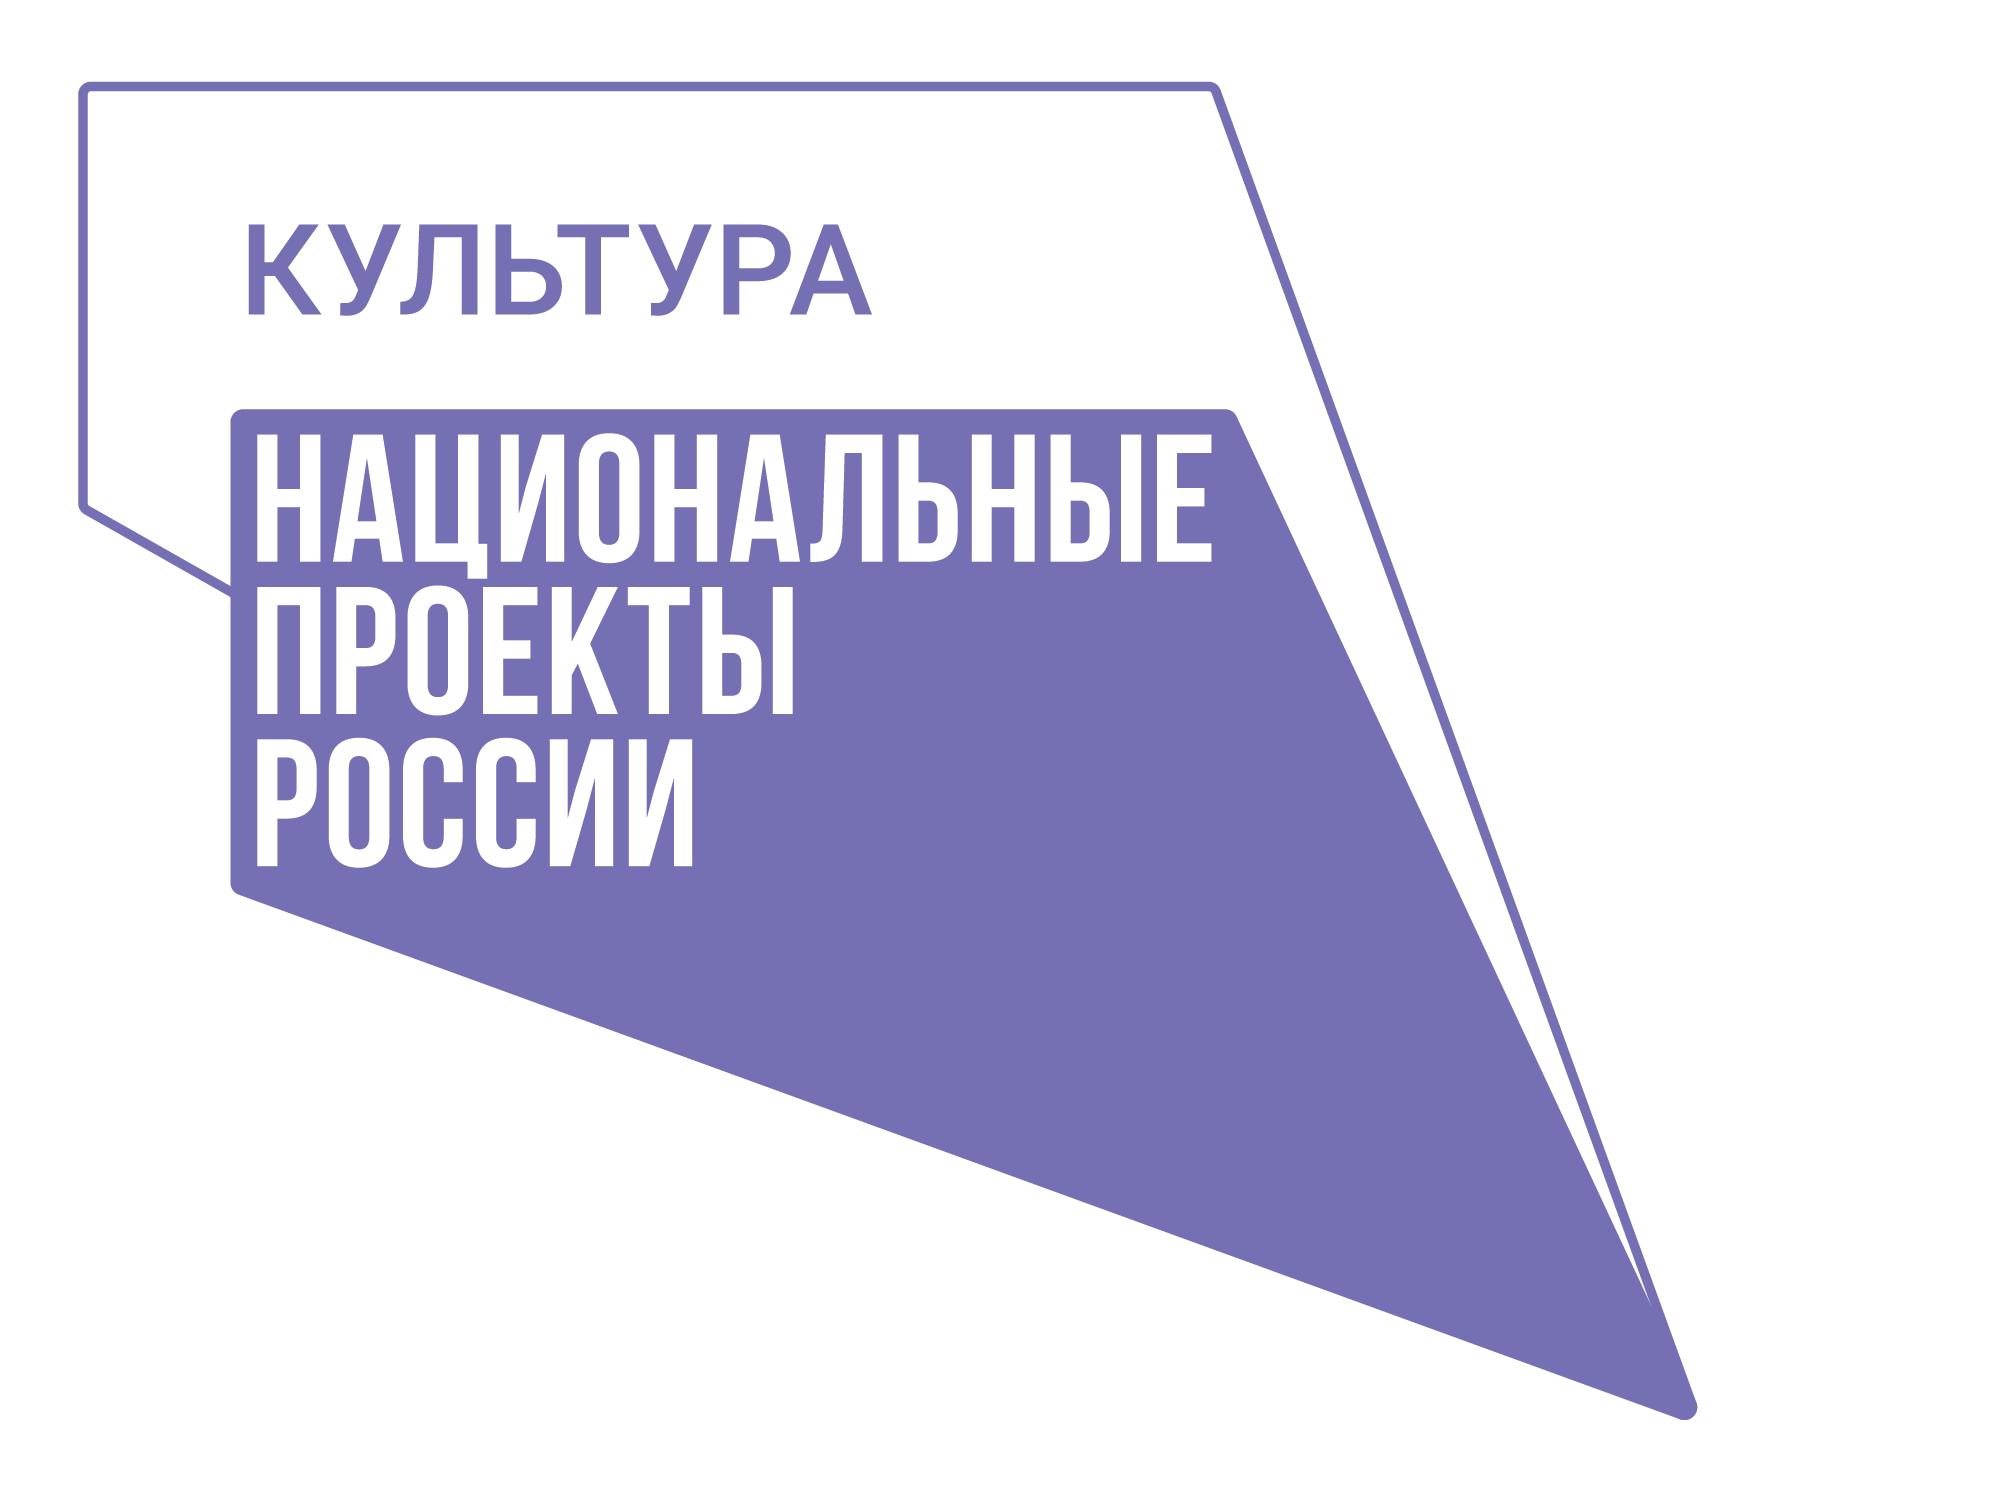 Модельный стандарт | Портал библиотек Сахалинской области